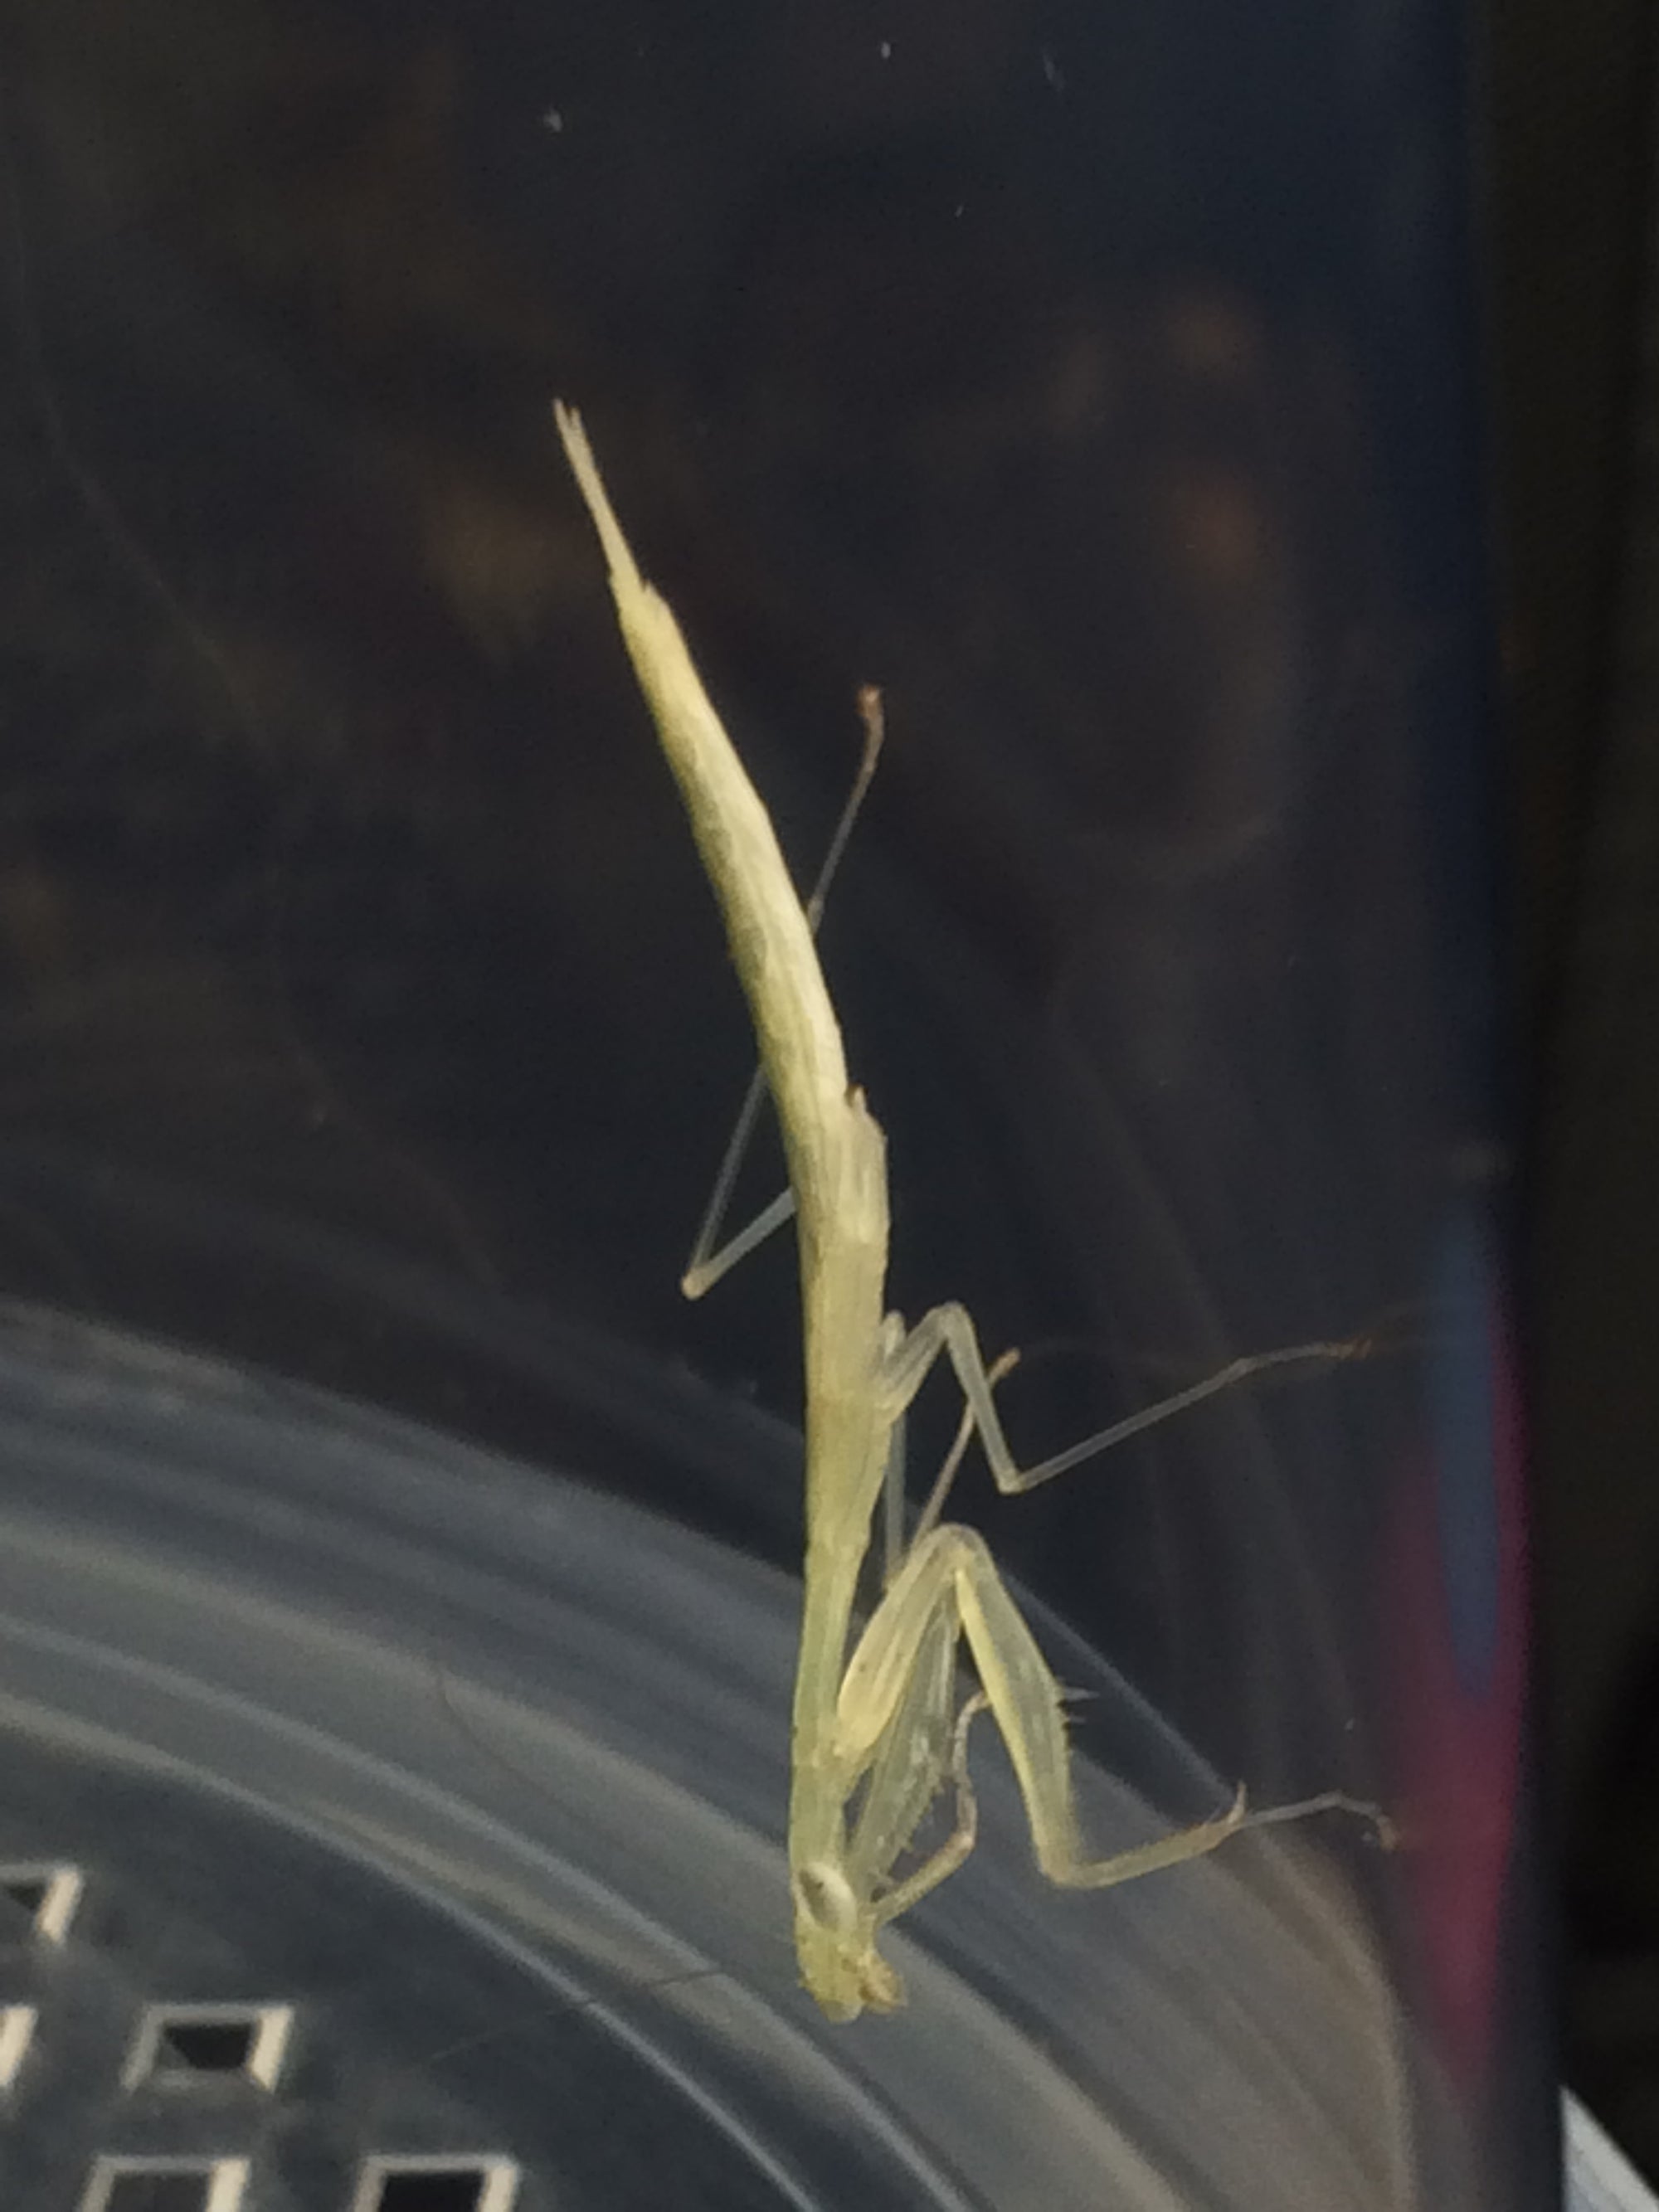 Sinomantis denticulata “Glass Mantis”, Live Insects - USMantis.com